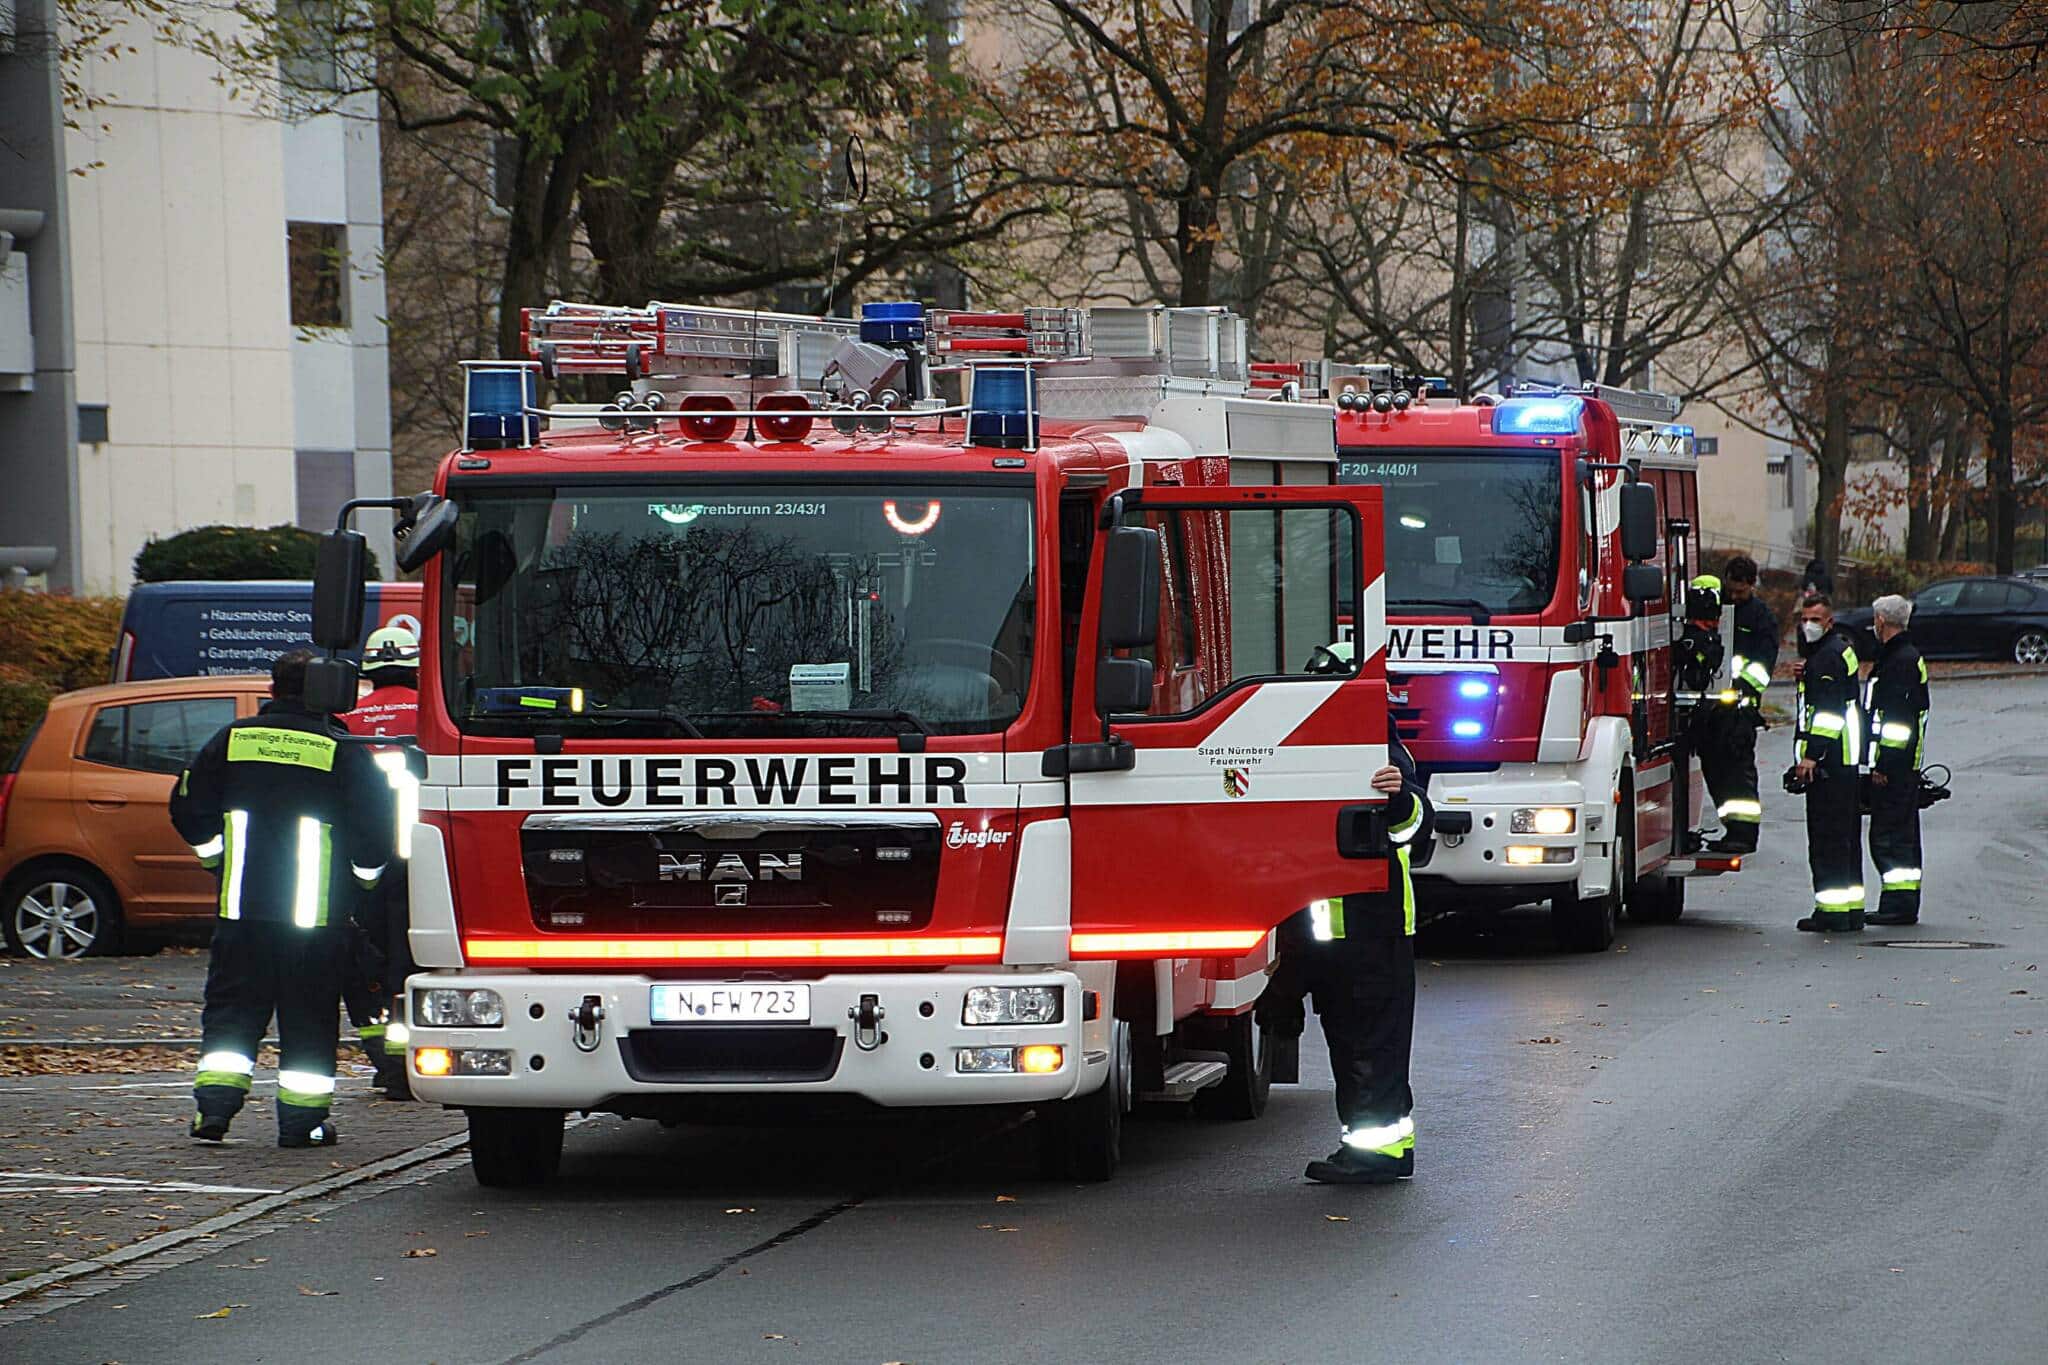 Die Berufs- und Freiwillige Feuerwehr Nürnberg rückten zu einem Brand in einem Hochhaus aus. Auf dem Foto ist ein Löschfahrzeug zu sehen.